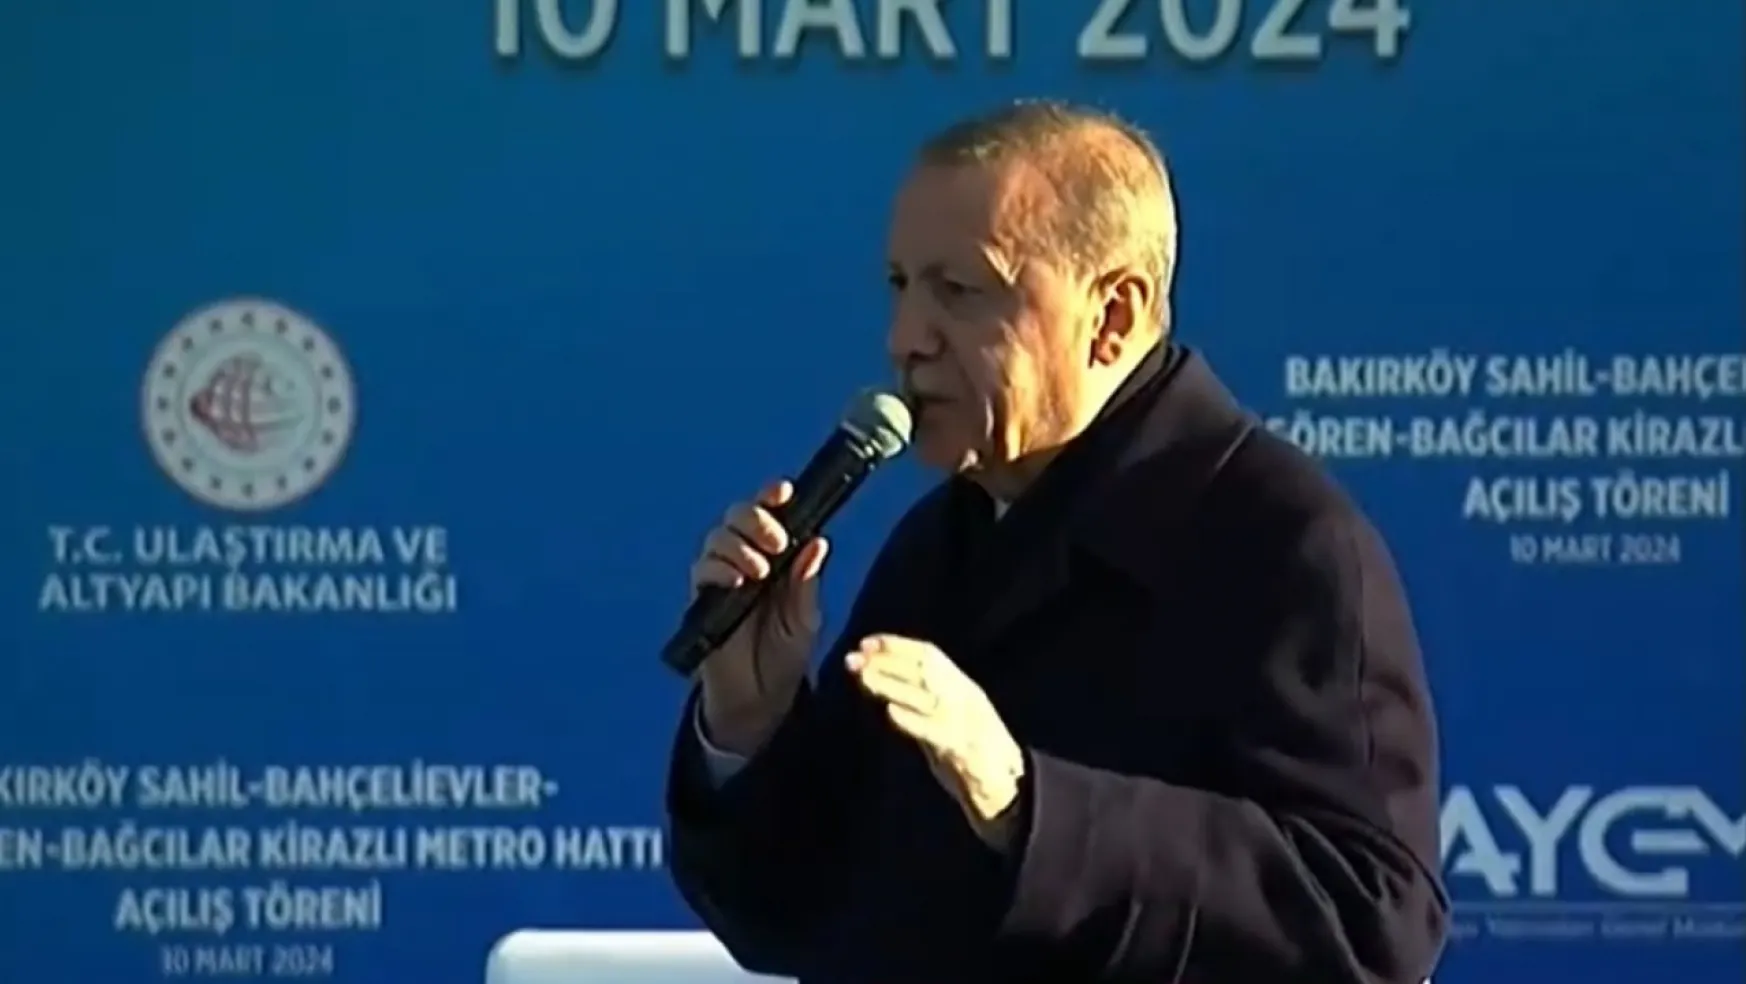 Cumhurbaşkanı Erdoğan: 5 yıl geçti İBB yönetimi kaç metro hattı yaptı?